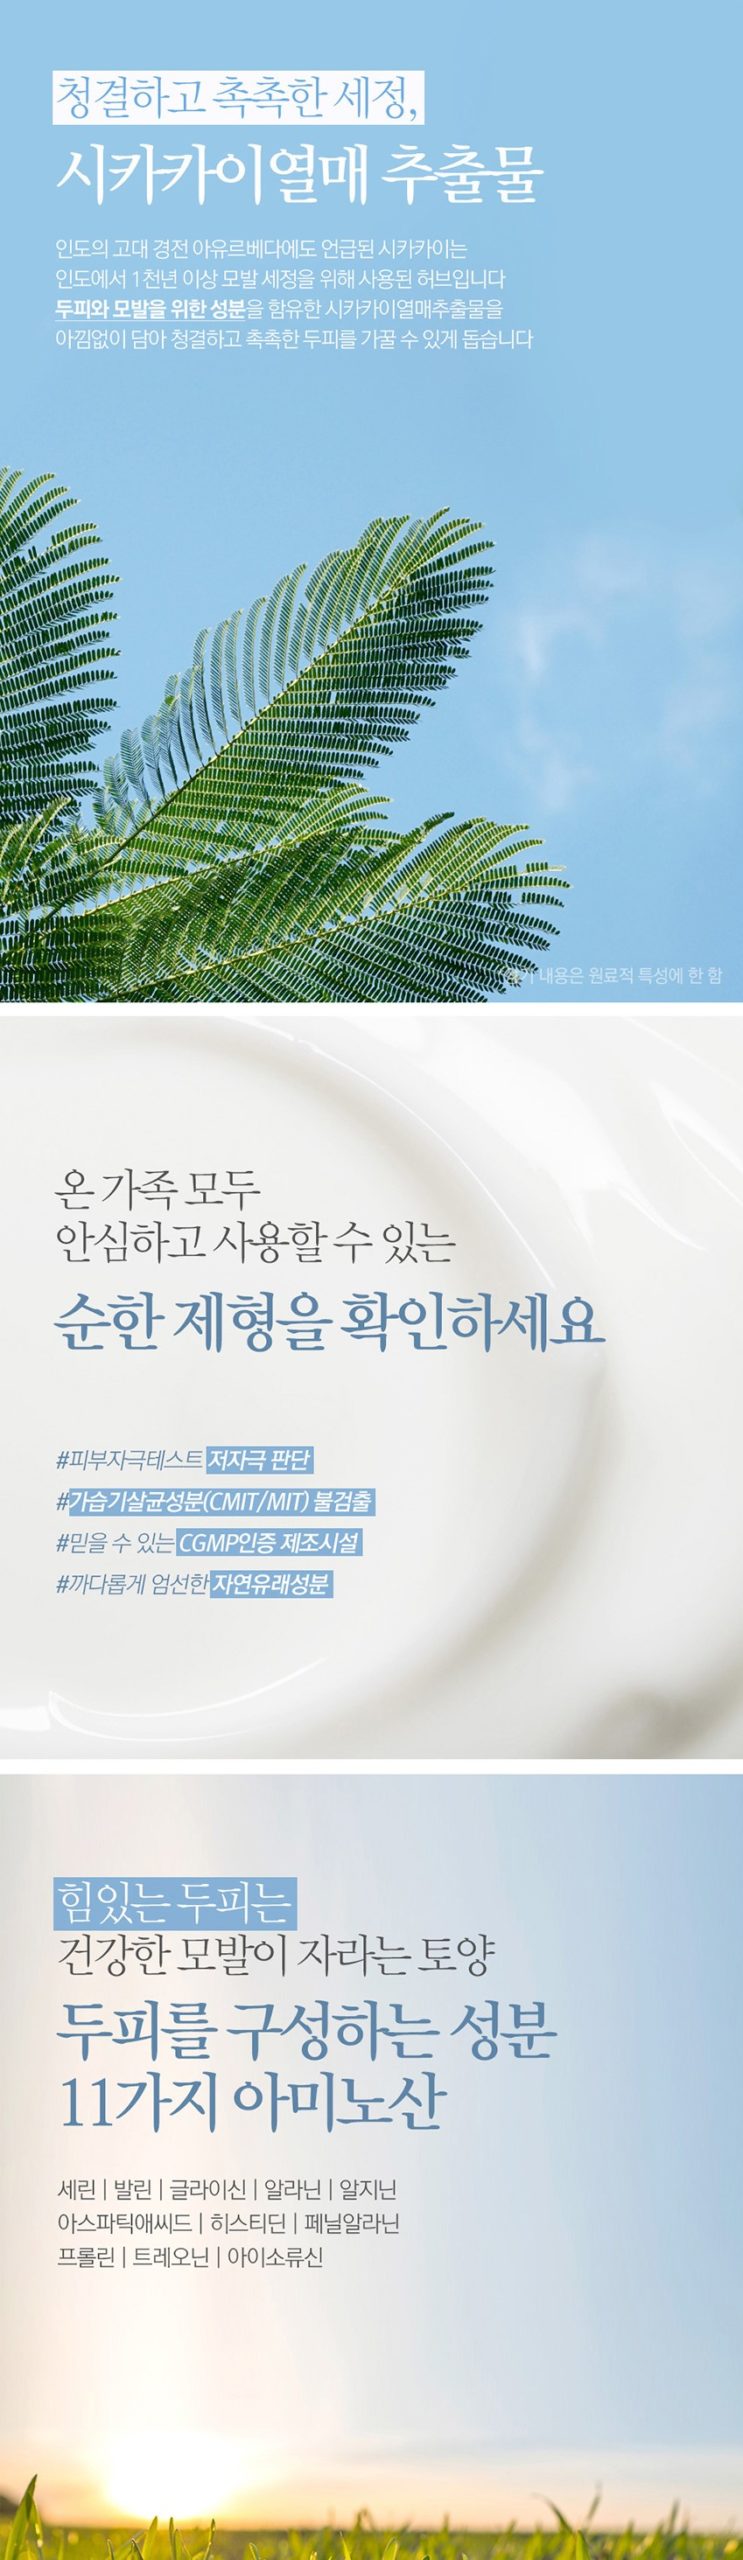 韓國食品-[Bouquet] Garni 護髮素 (潔淨肥皂) 500ml